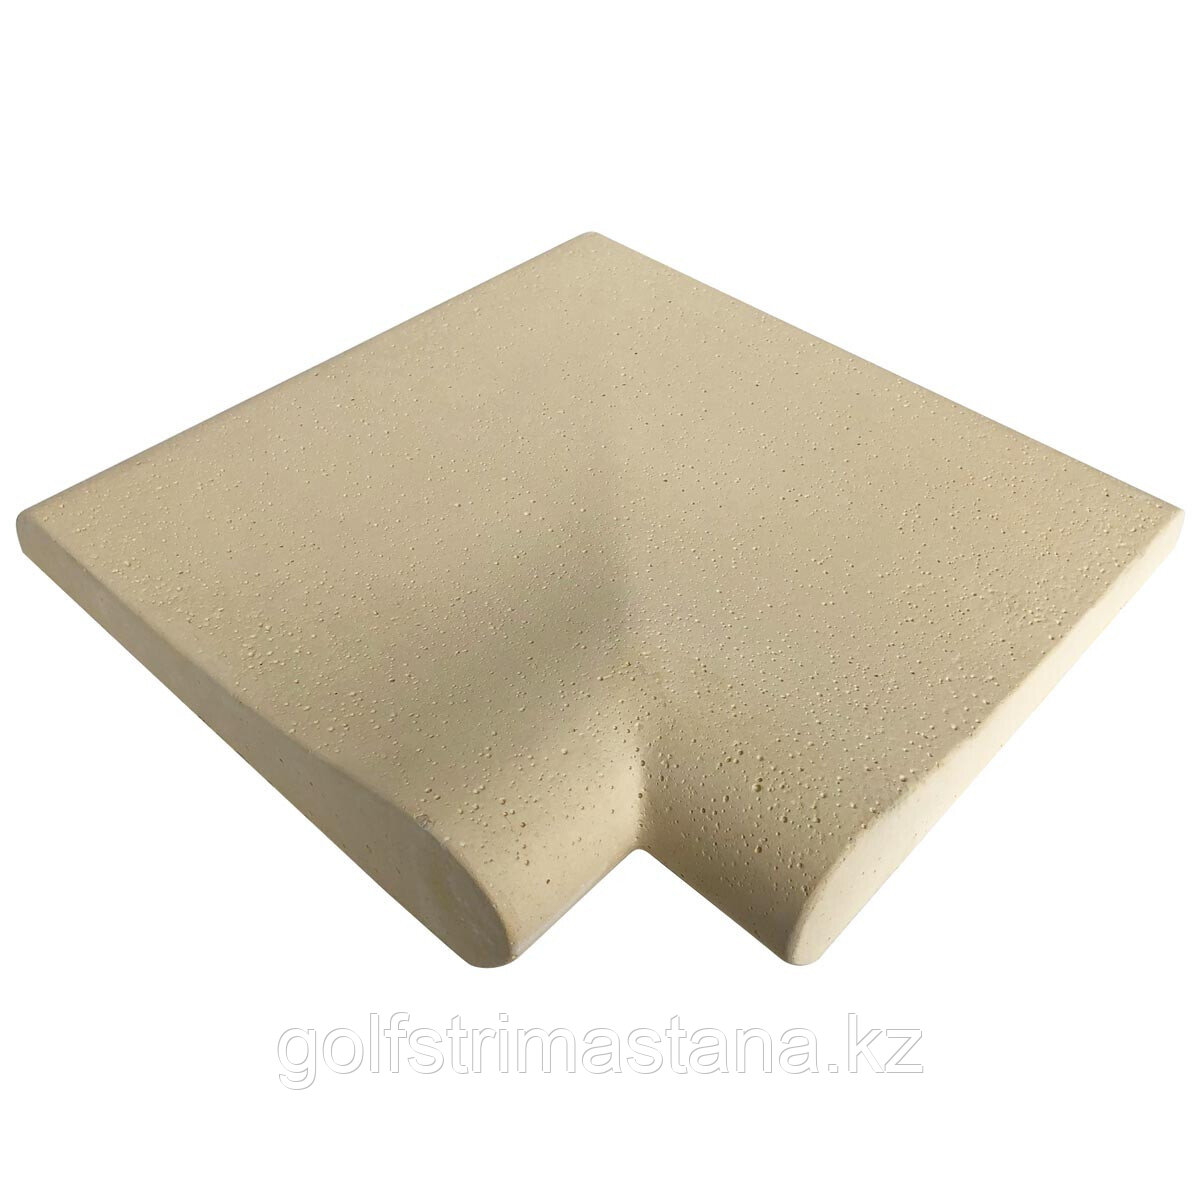 Копинговый камень (32x32х3-6,5 см) Carobbio Rustic с микроперфорированной поверхностью, песочный